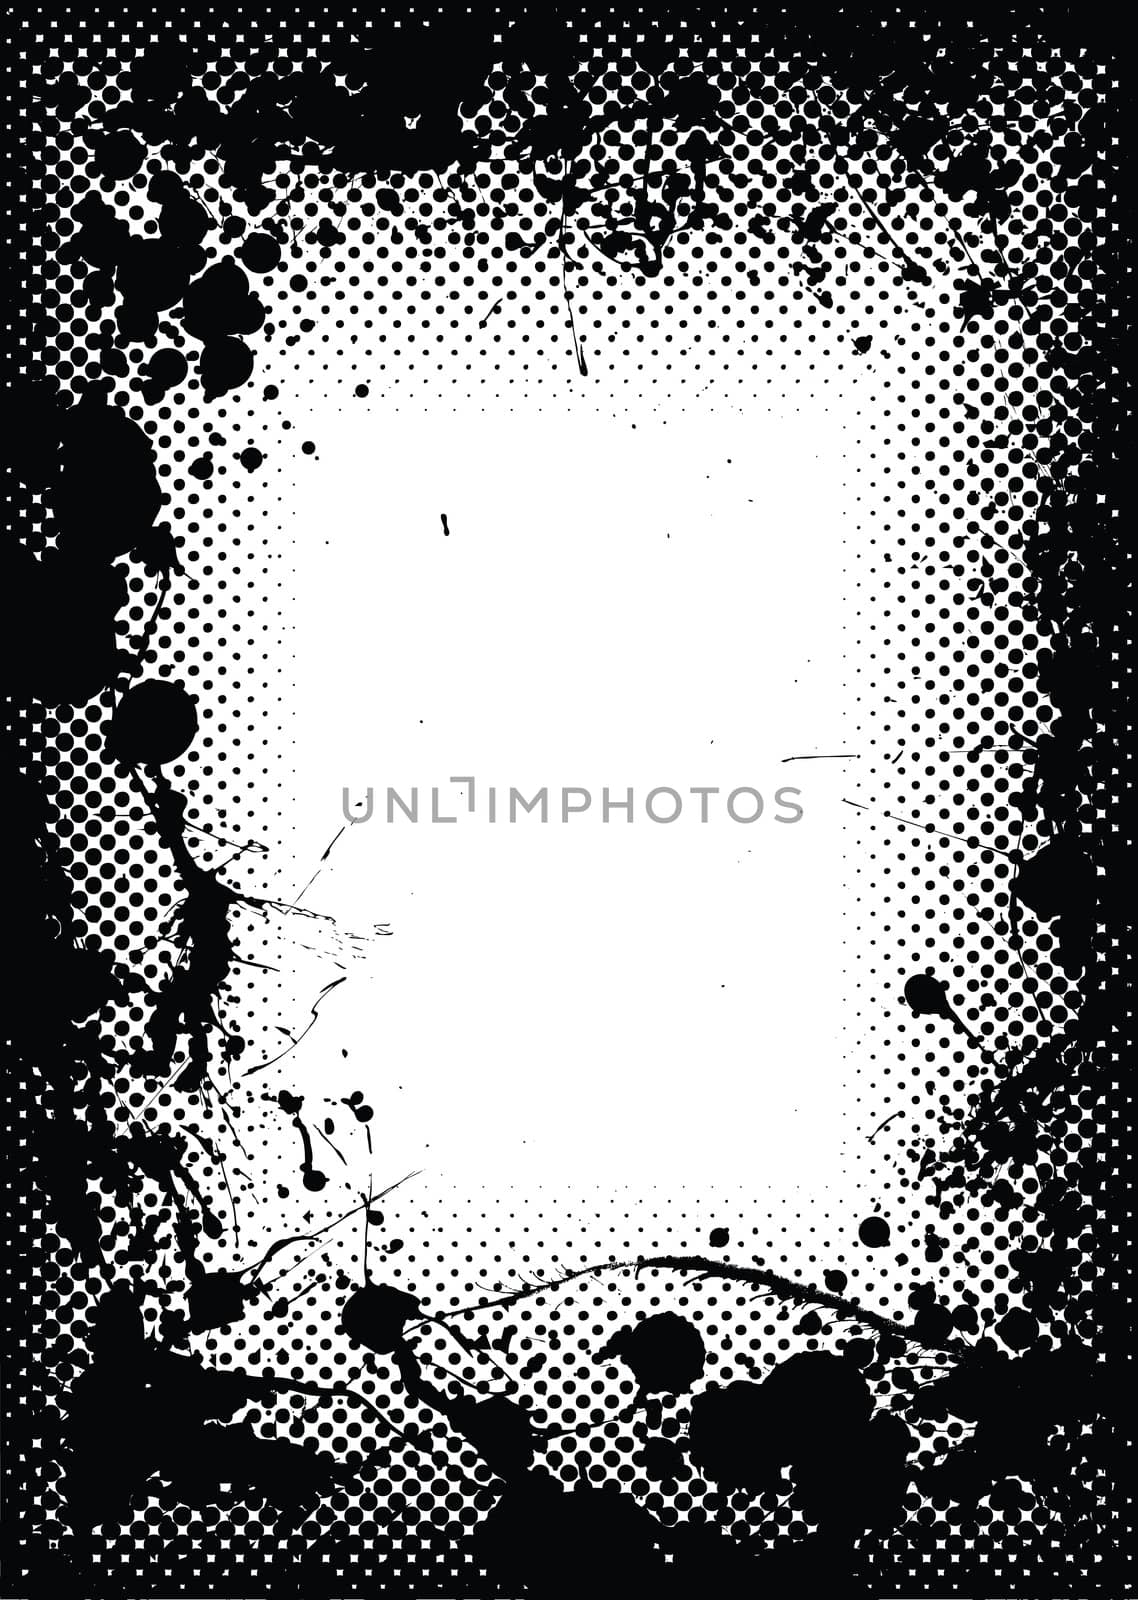 Halftone dot black border or frame with grunge ink splats